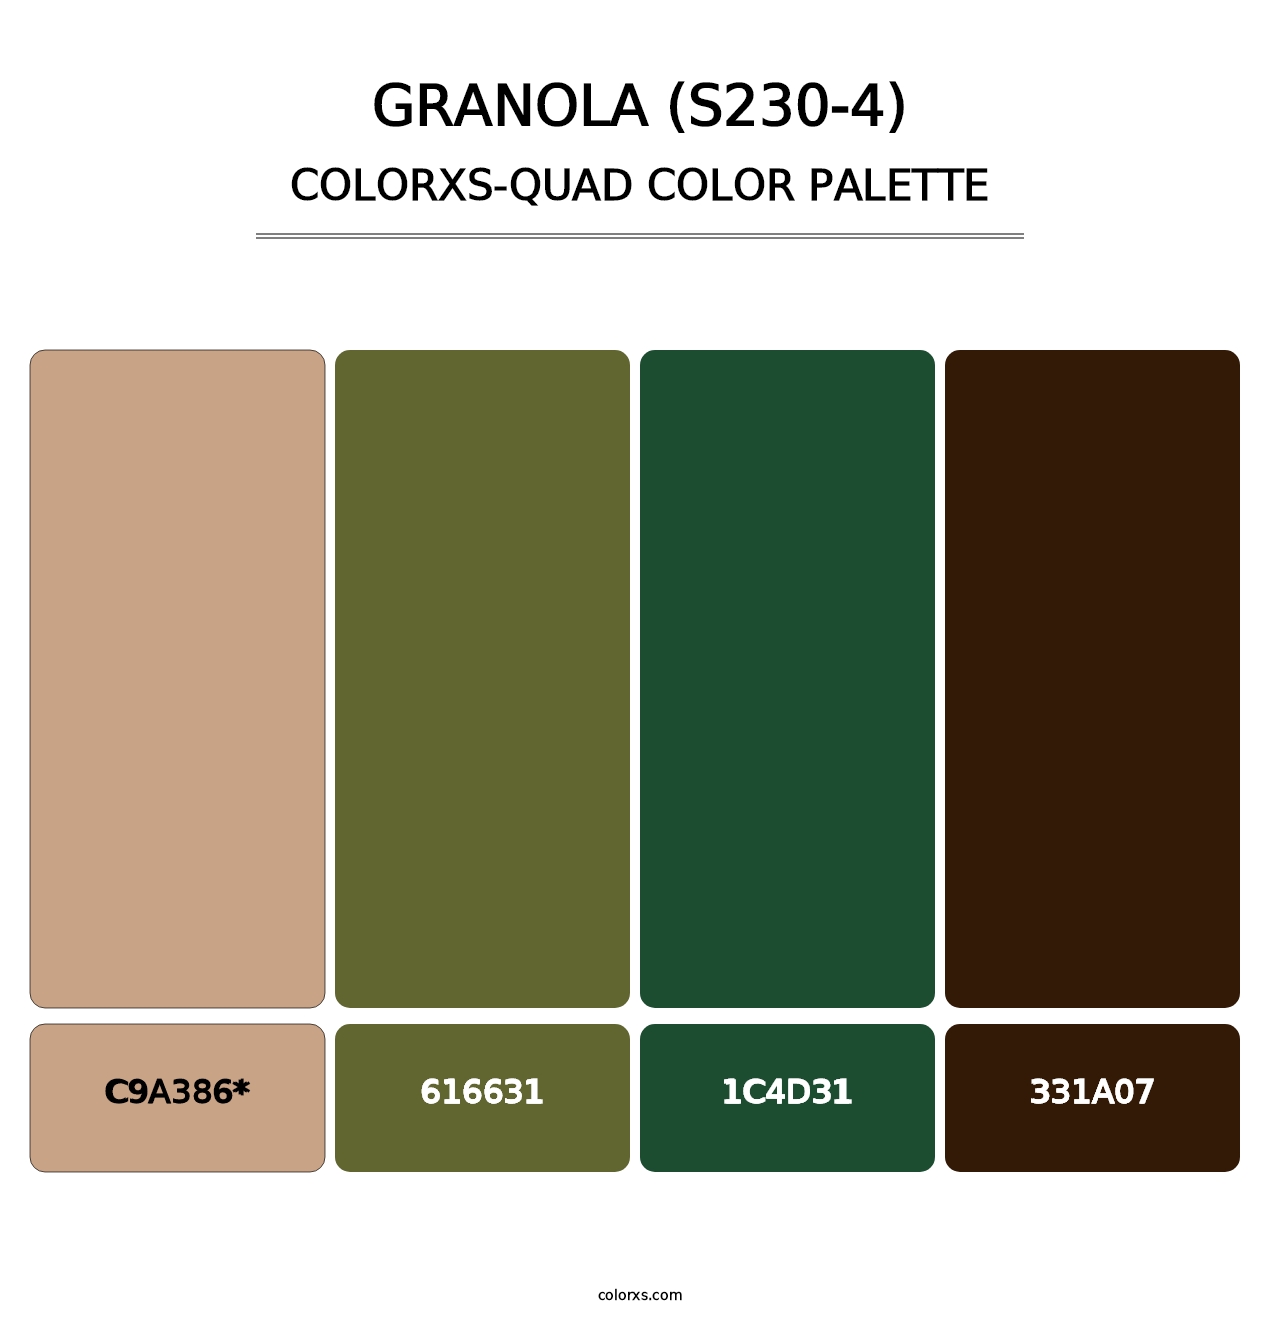 Granola (S230-4) - Colorxs Quad Palette